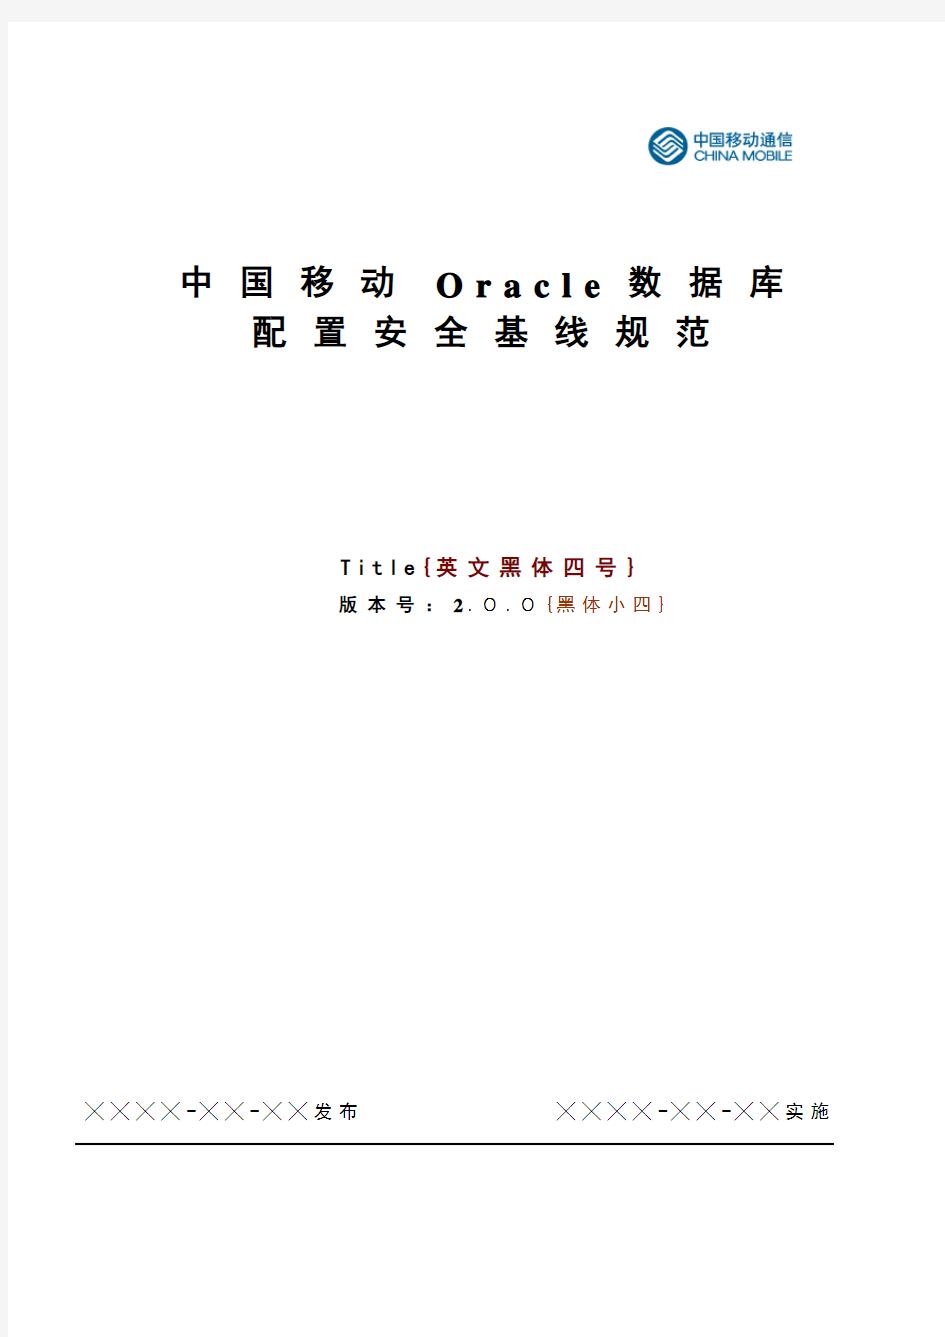 中国移动Oracle数据库安全配置基线规范资料